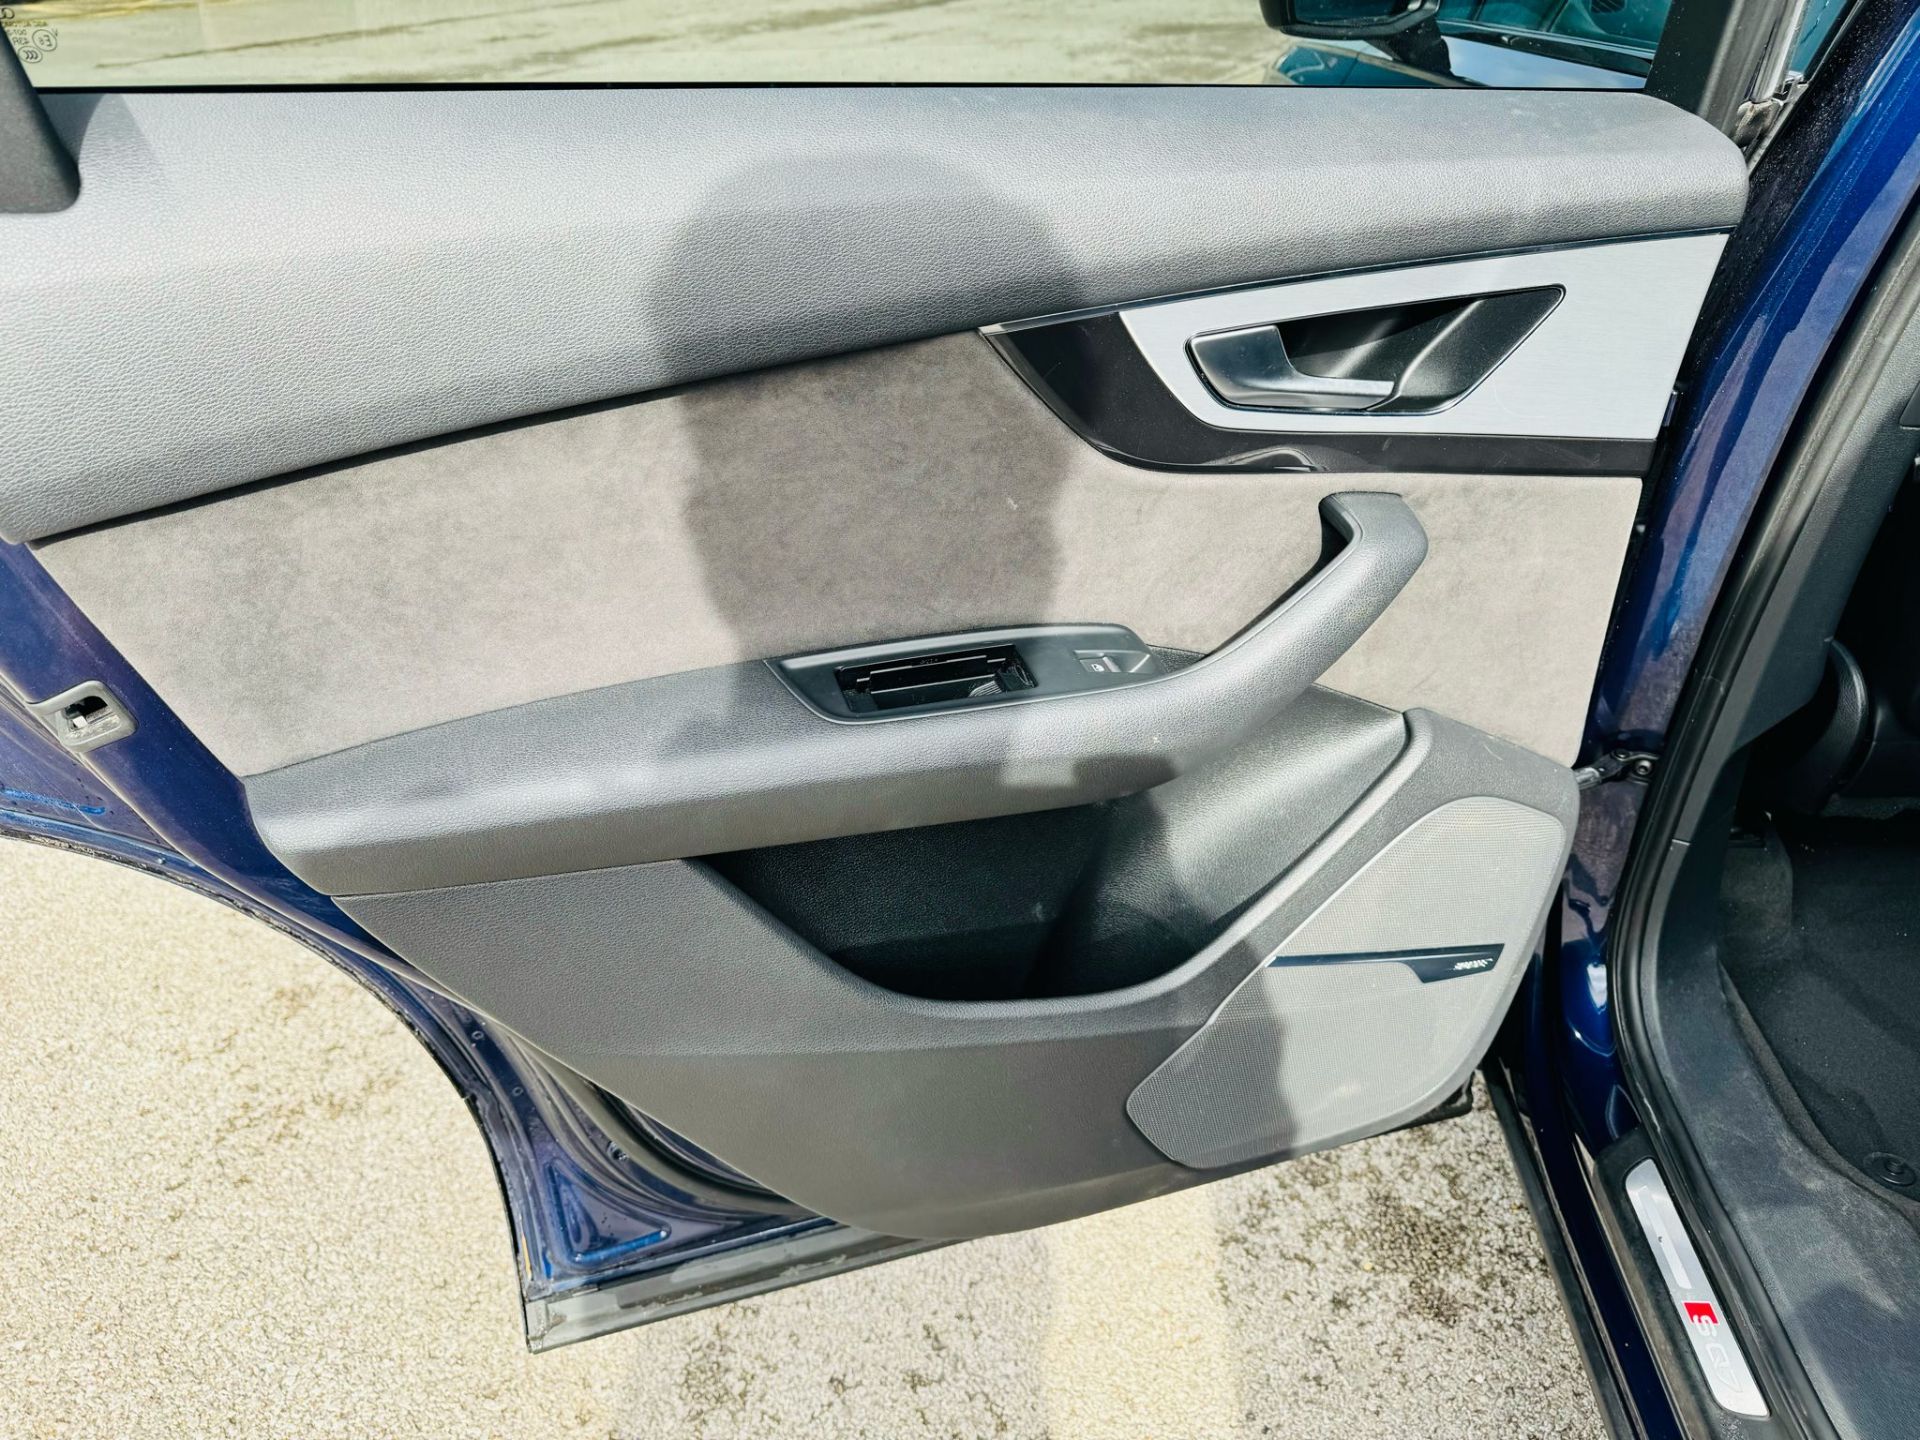 Audi SQ7 4.0TDI V8 Quattro 430BHP "SQ7 EDITION" Auto (7 Seats) 2018 18Reg -Sat Nav -Reversing camera - Image 37 of 37